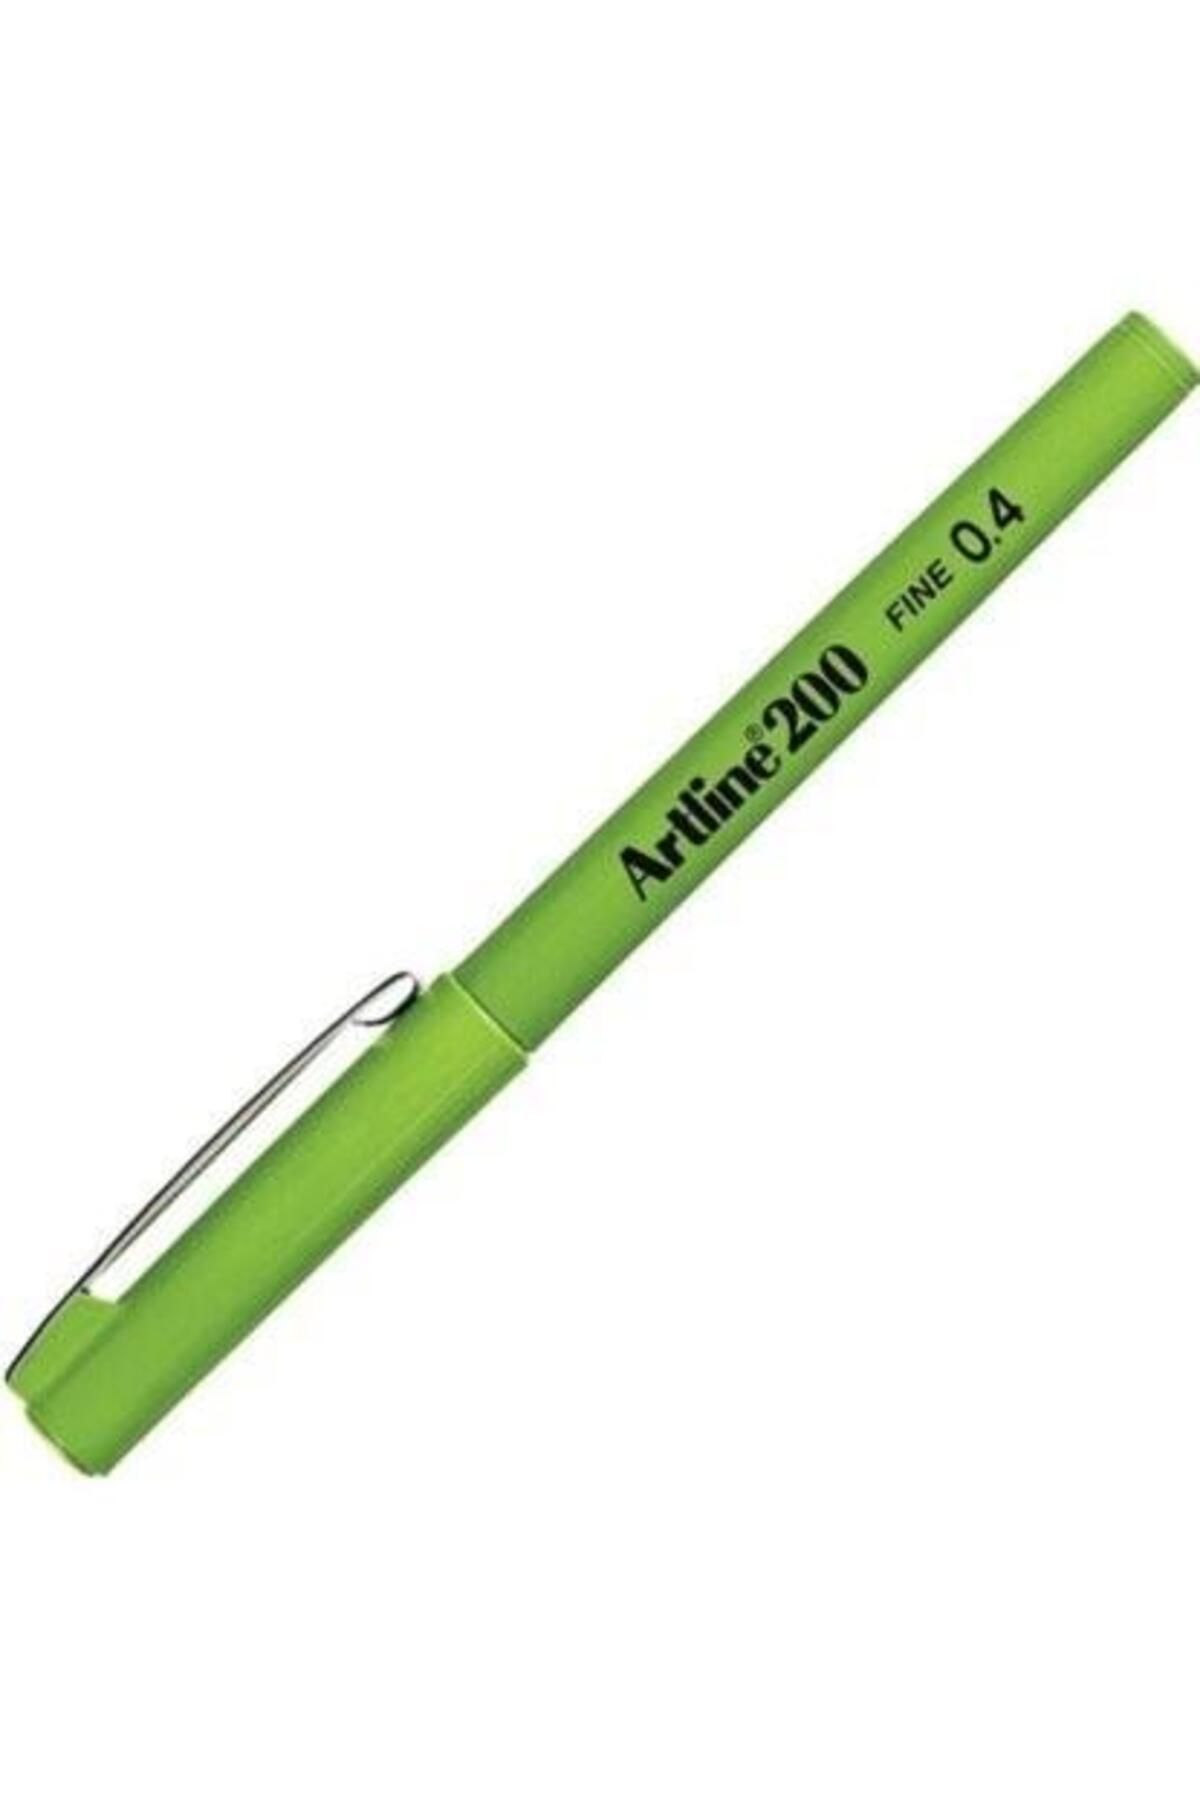 artline 200 Fineliner 0.4mm Keçe Uçlu Kalem Sarımsı Yeşil